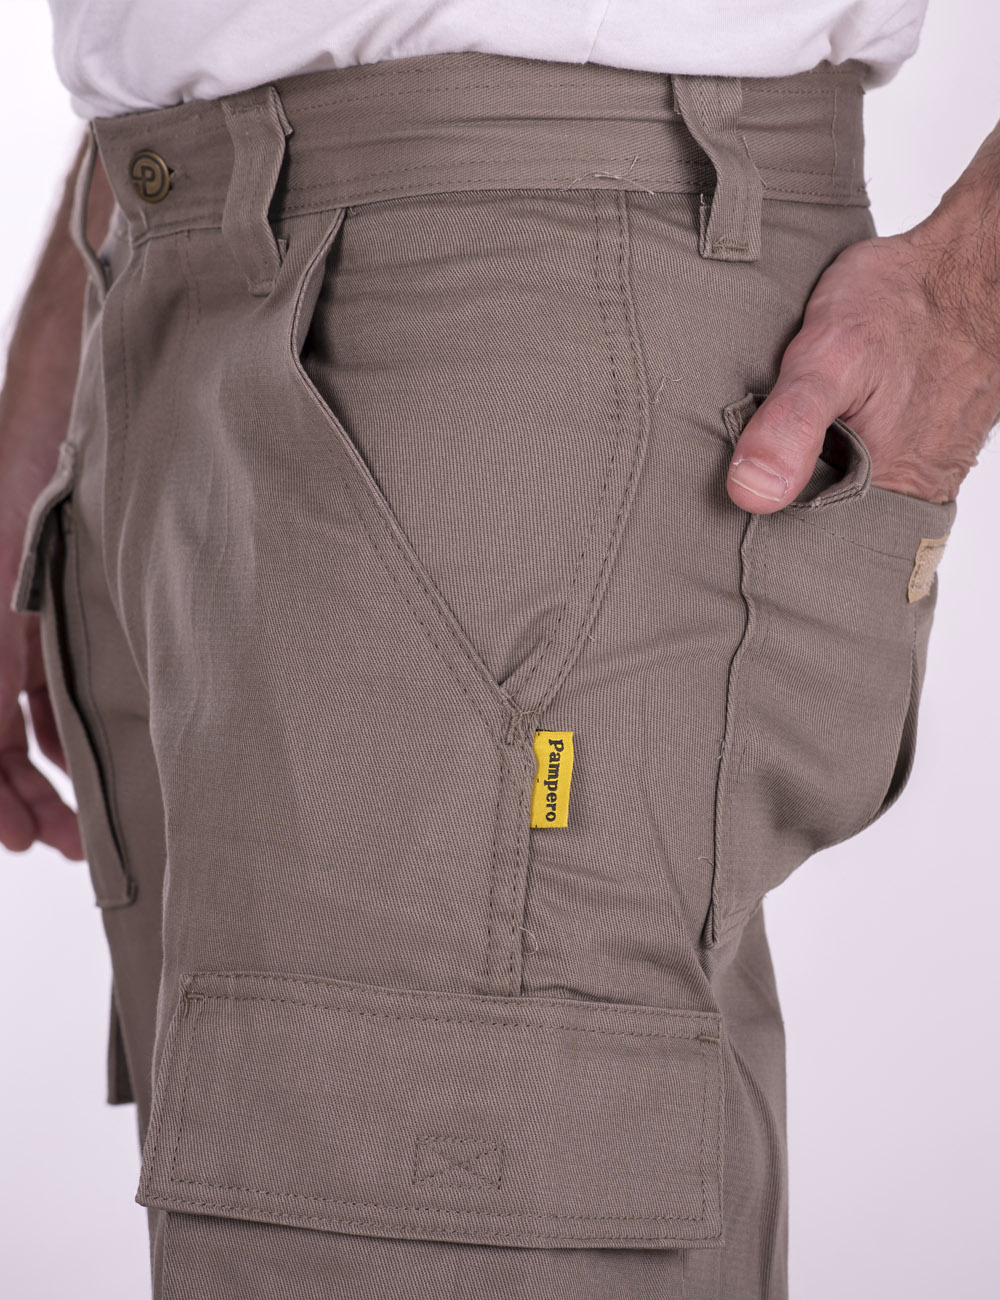 Pantalón Cargo Pampero 7 bolsillos - Macchi Textil